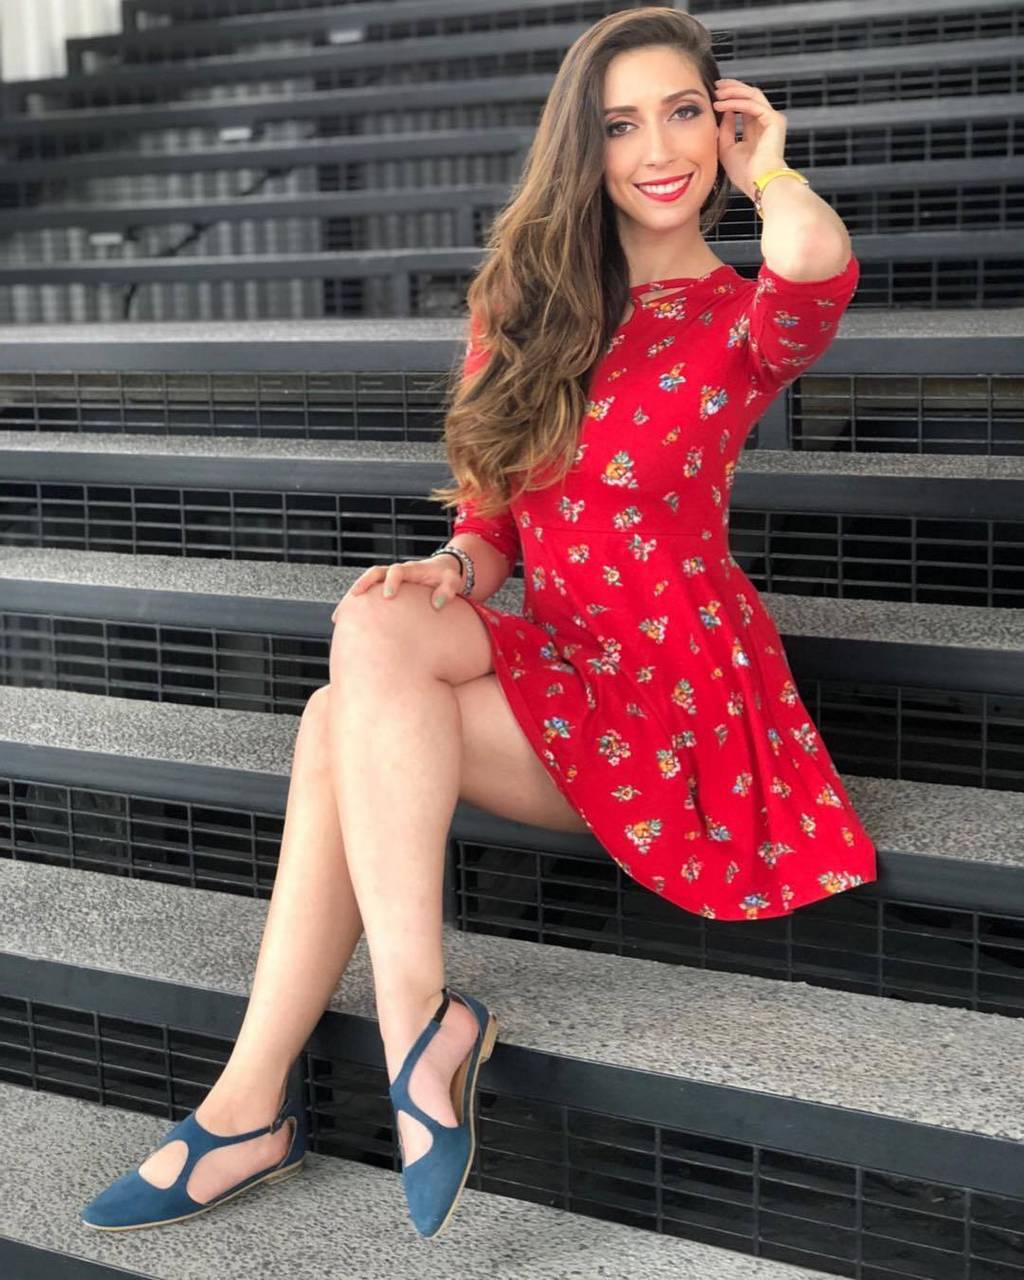 Alejandra Toledano Feet